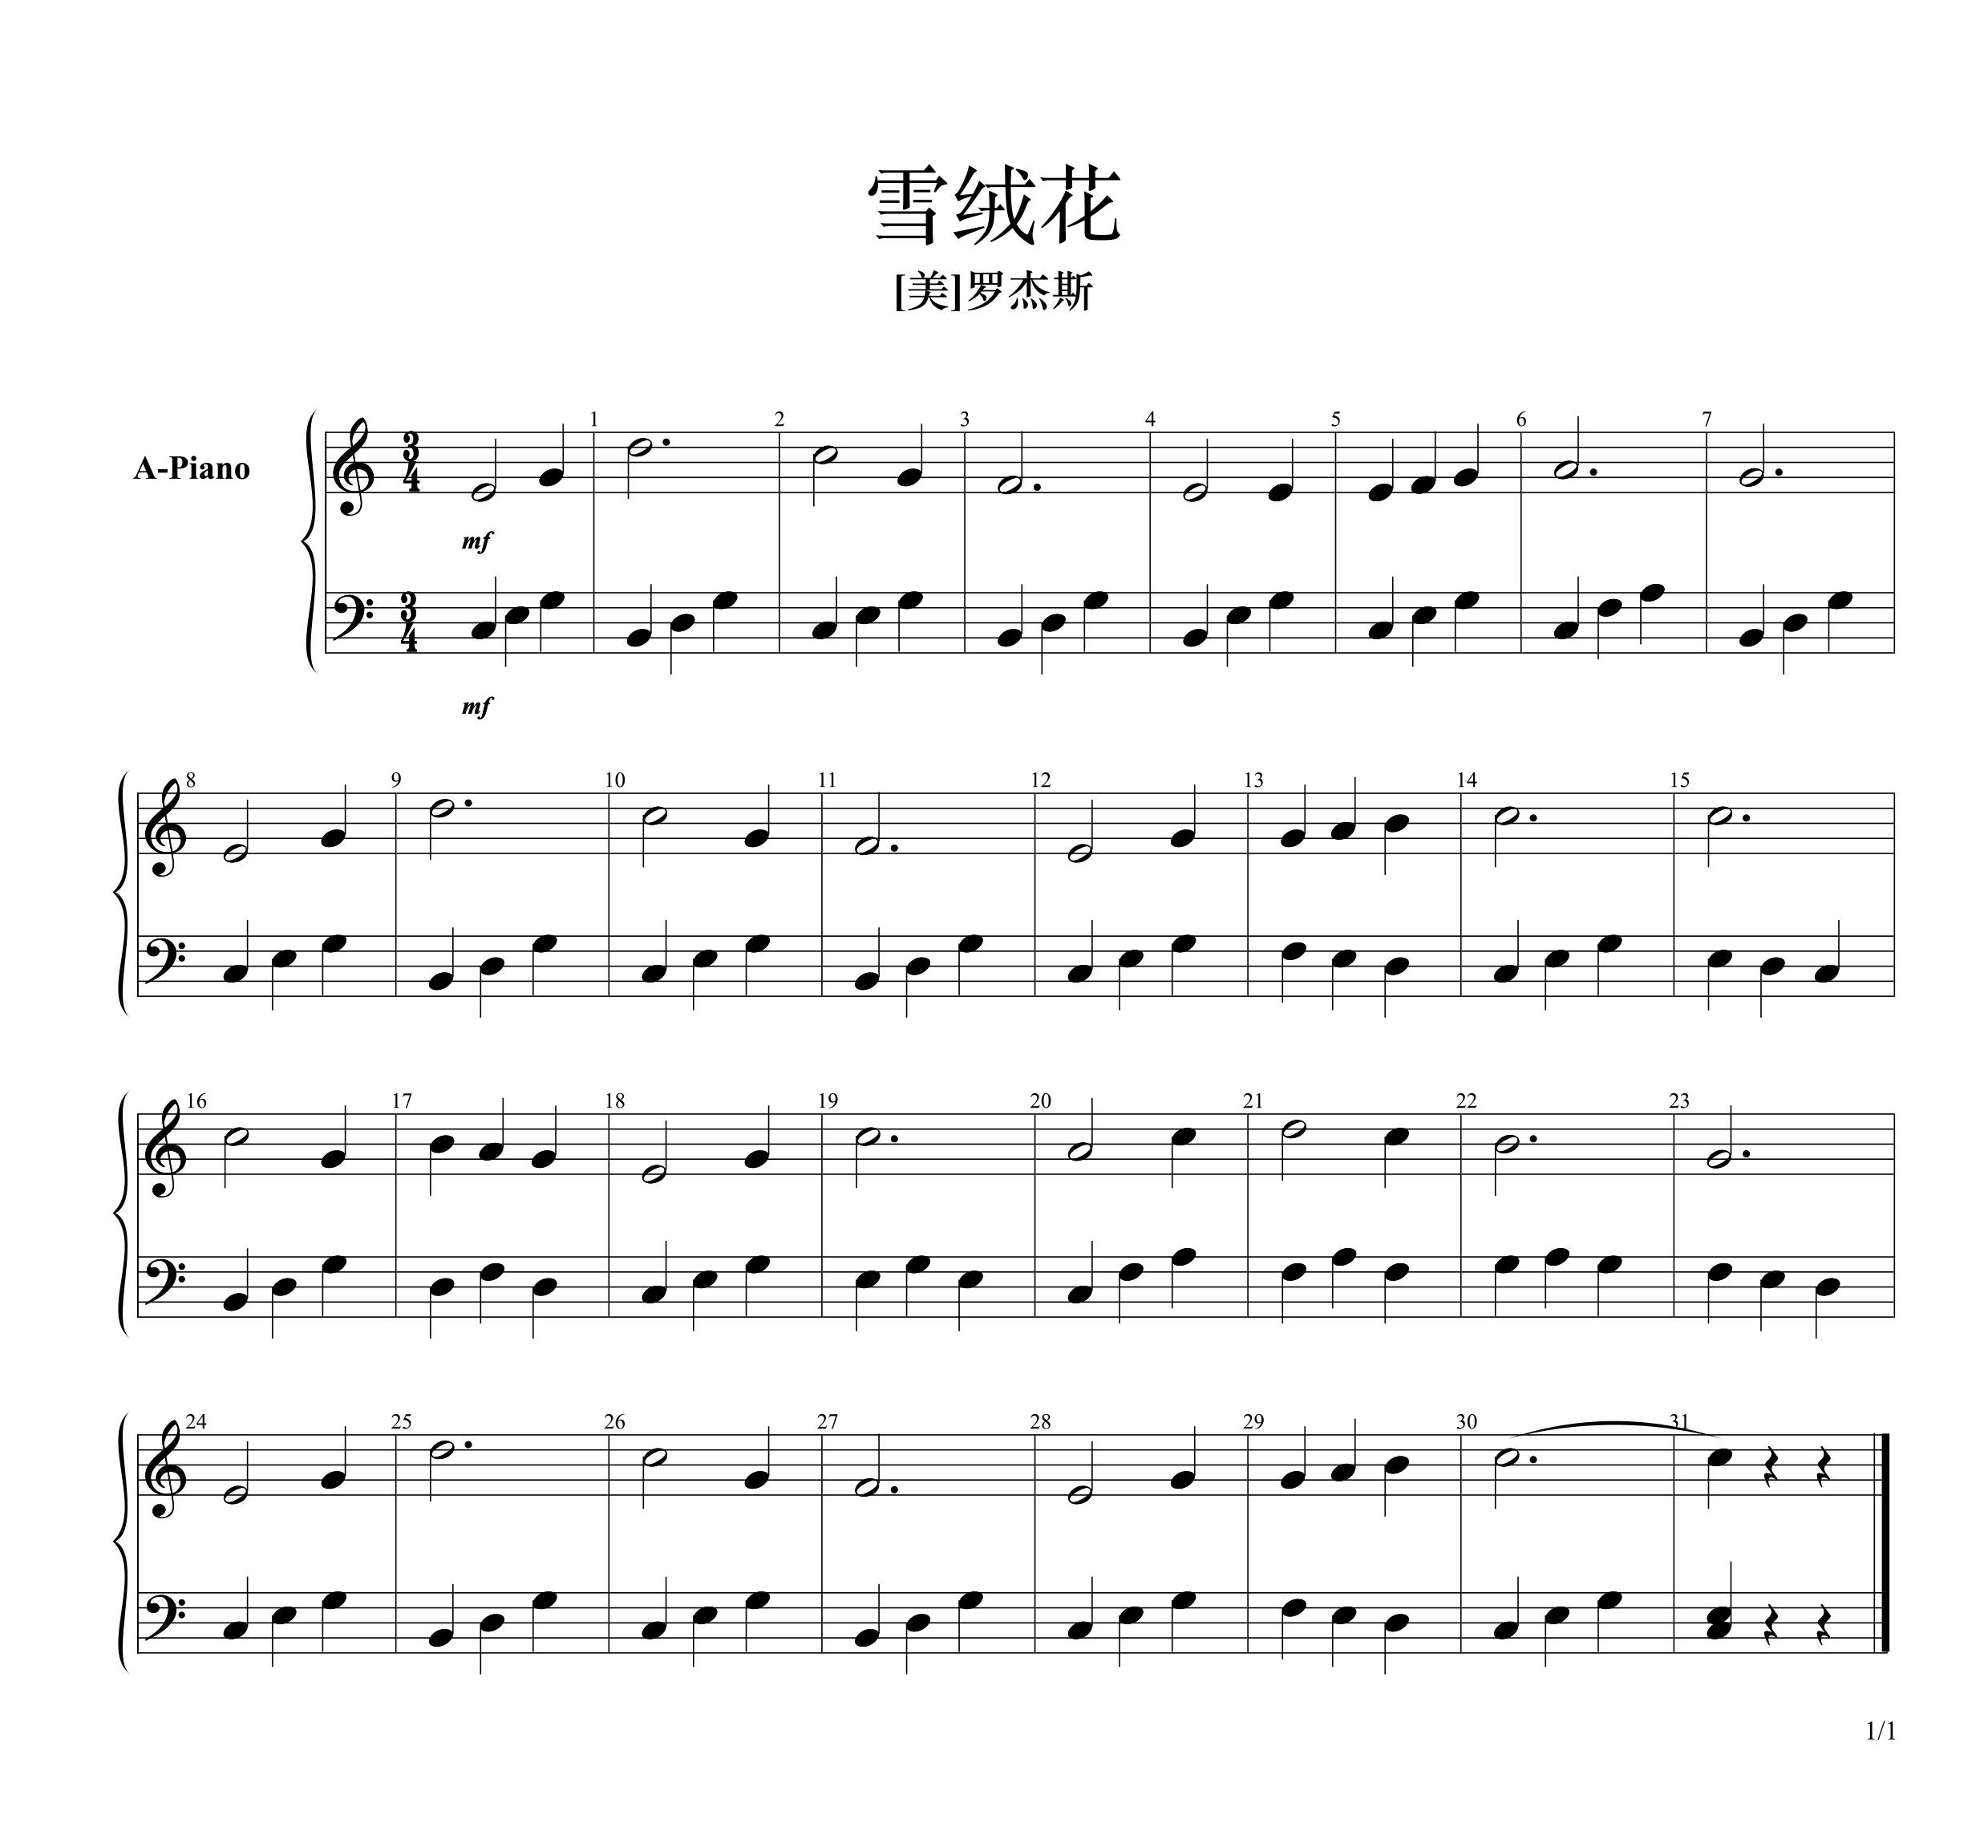 【 雪绒花】新爱琴·从零开始学钢琴